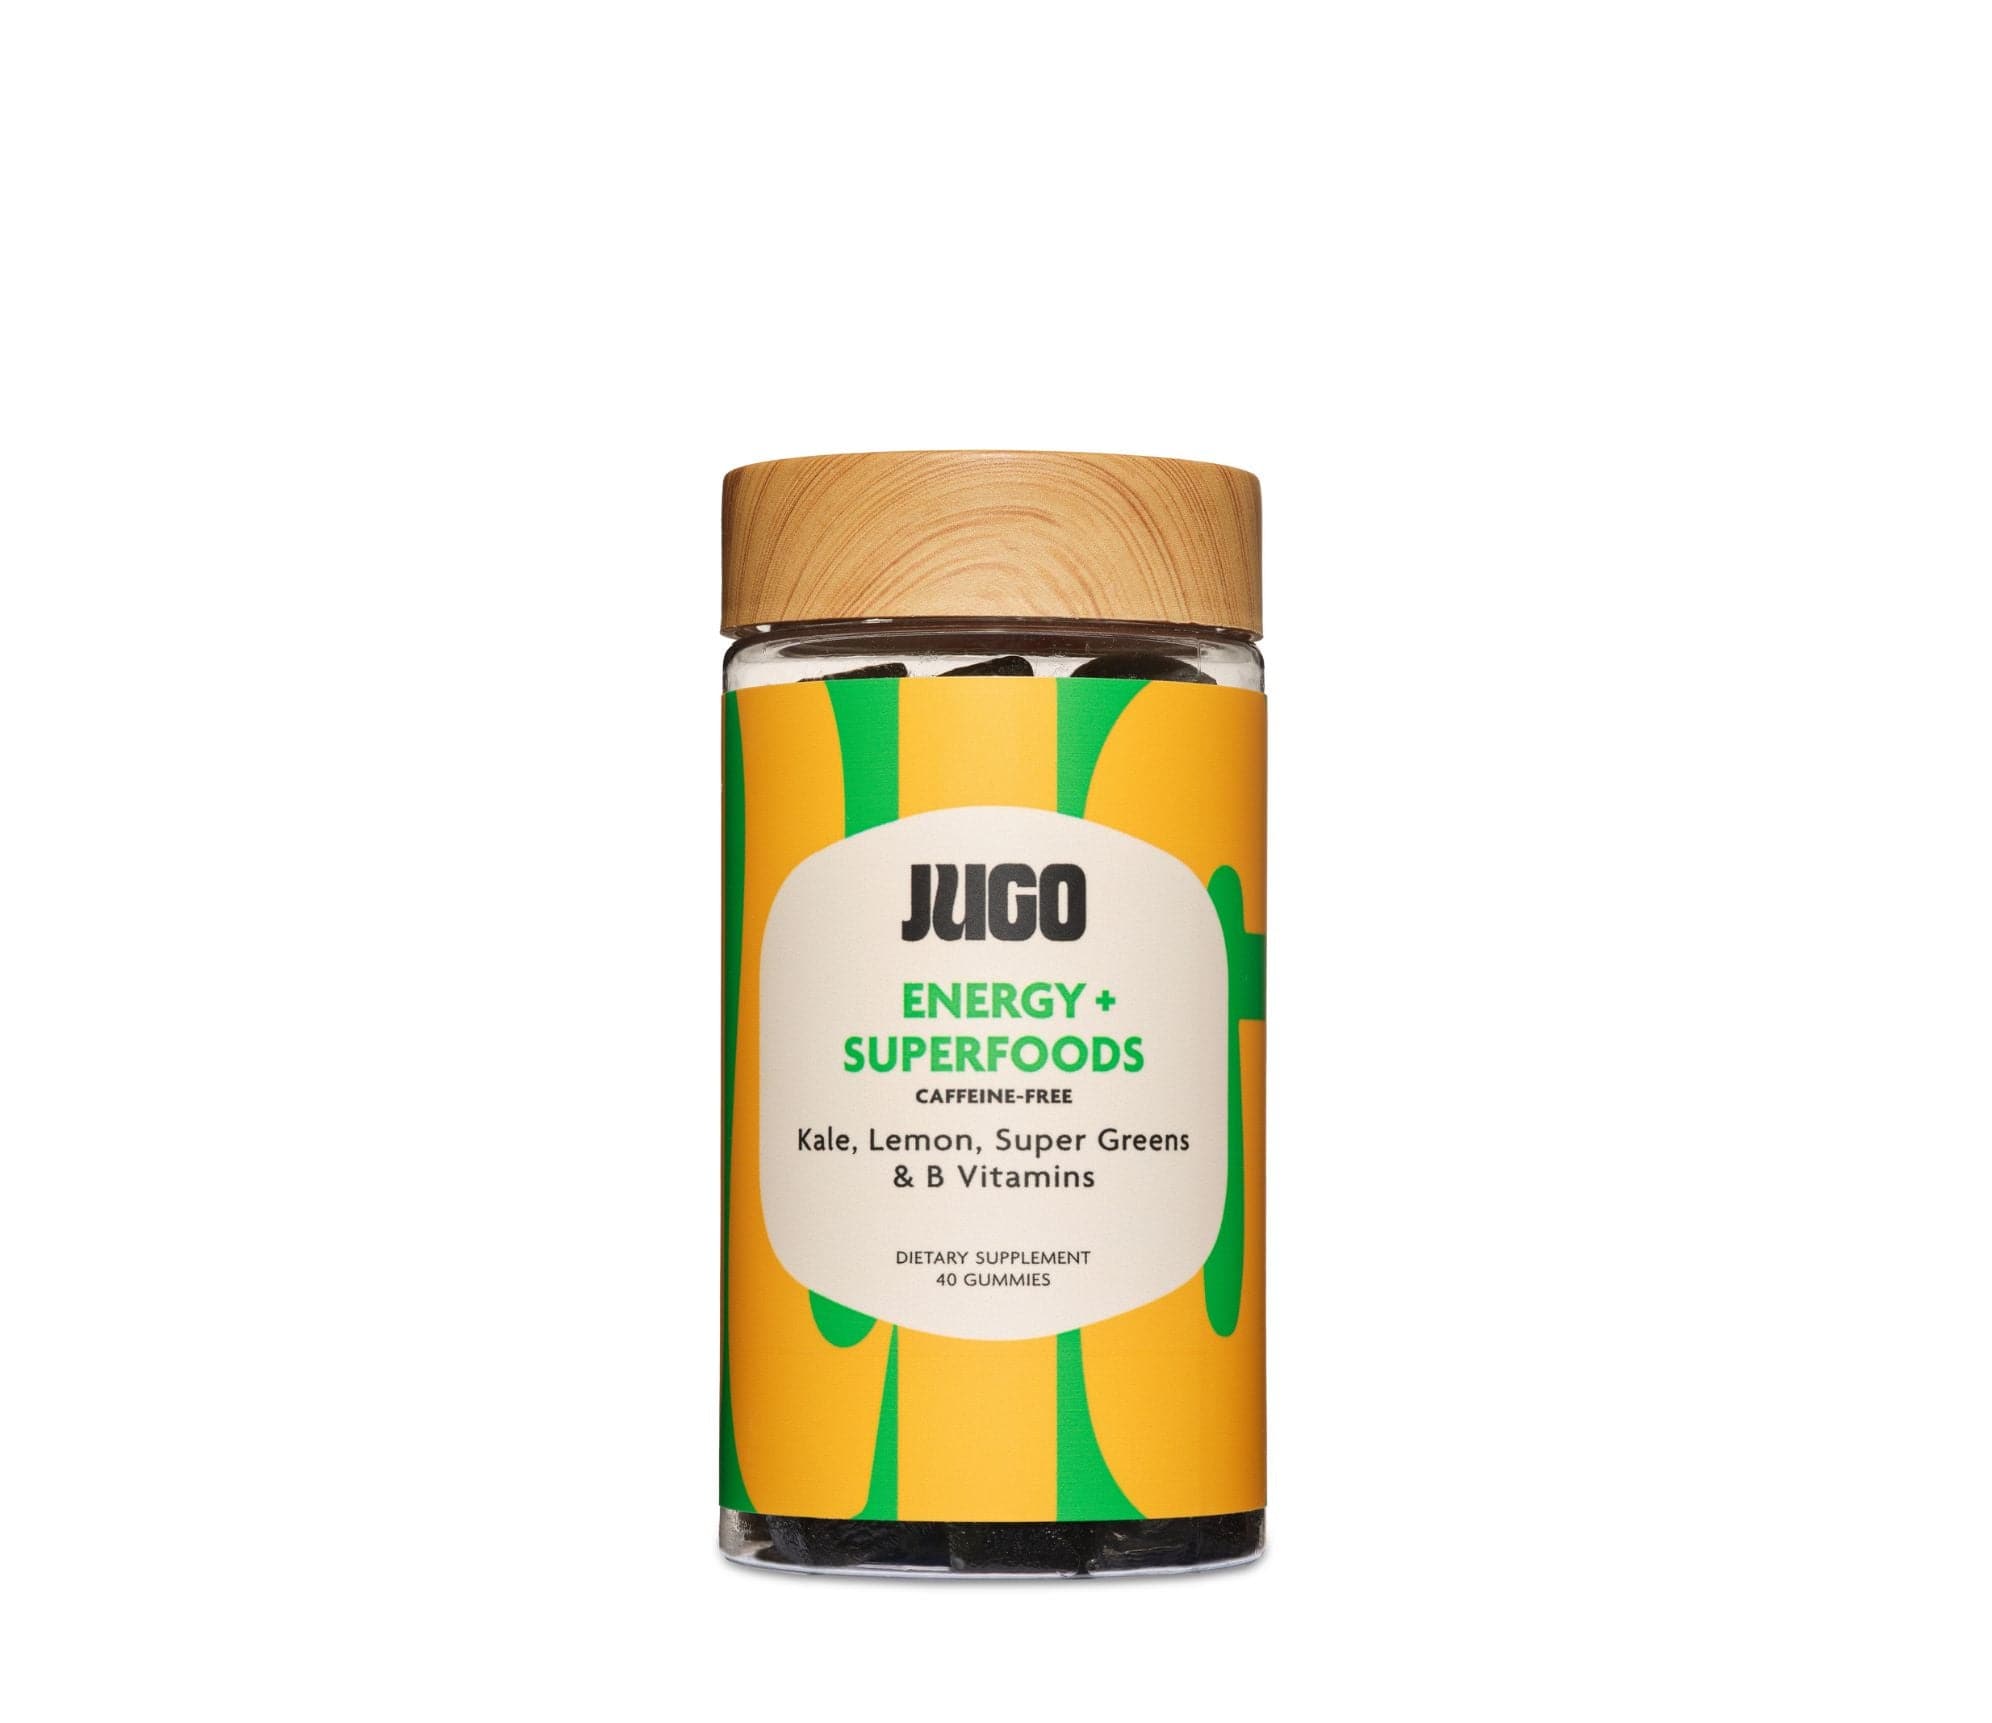 JUGO ENERGY + SUPERFOODS gummies